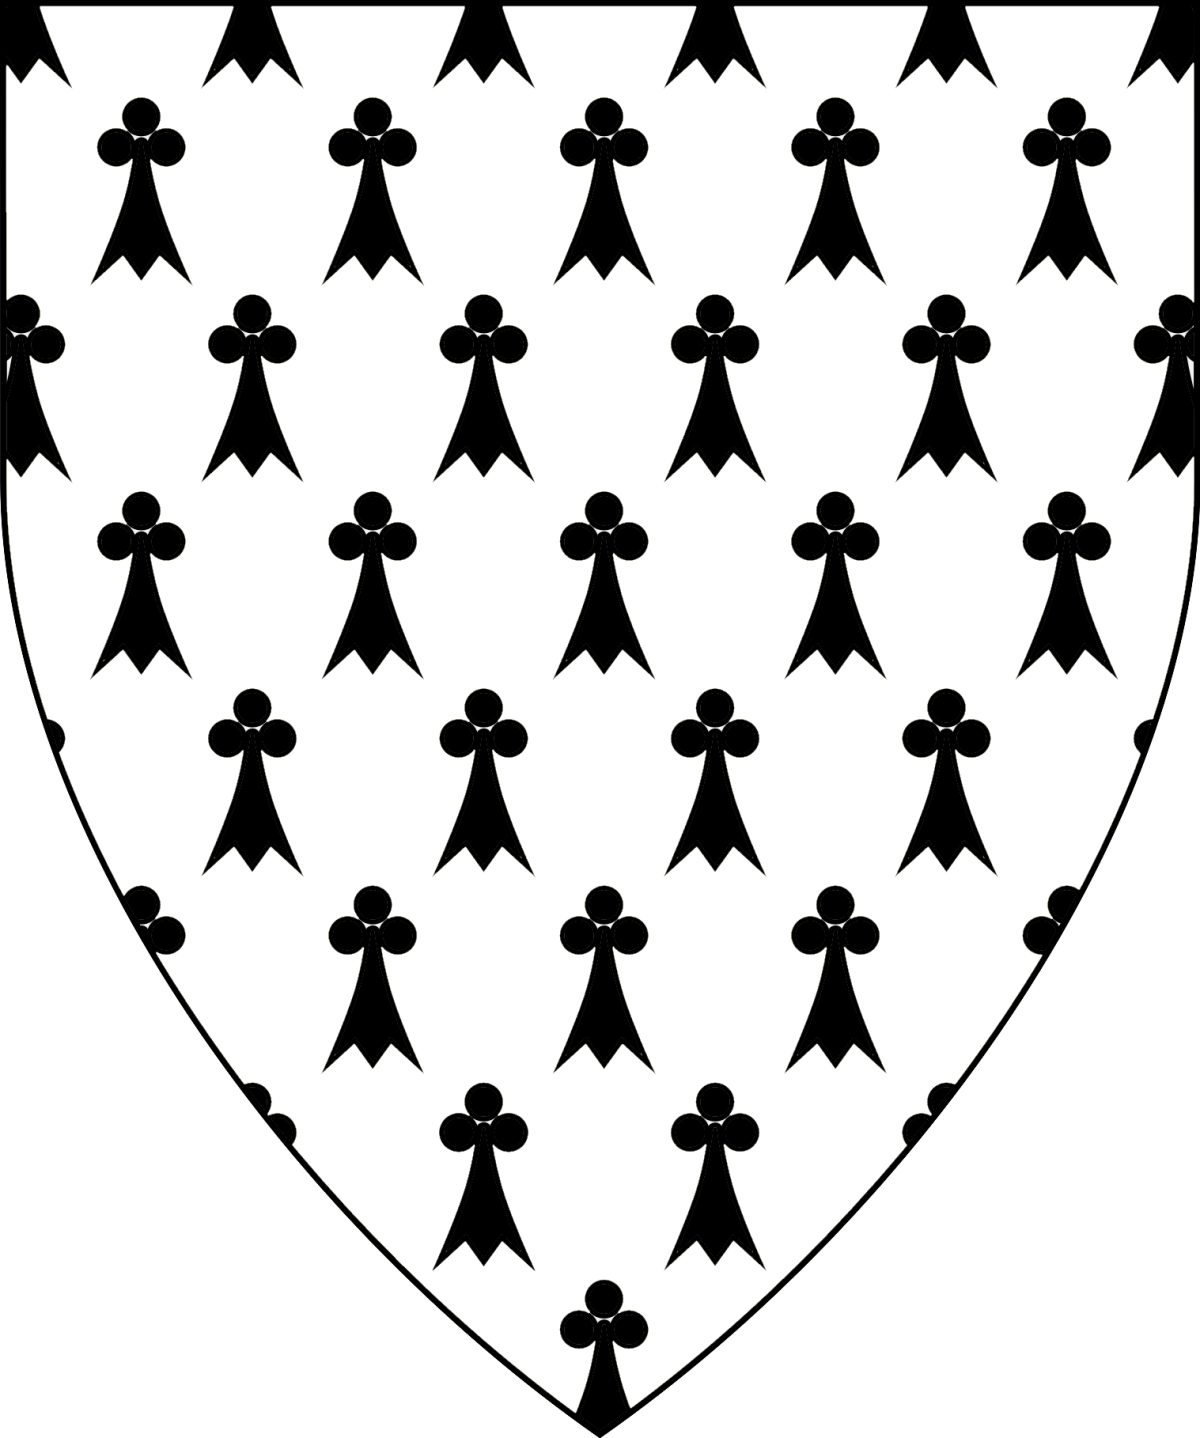 Heraldic glossary : Ermine in heraldry